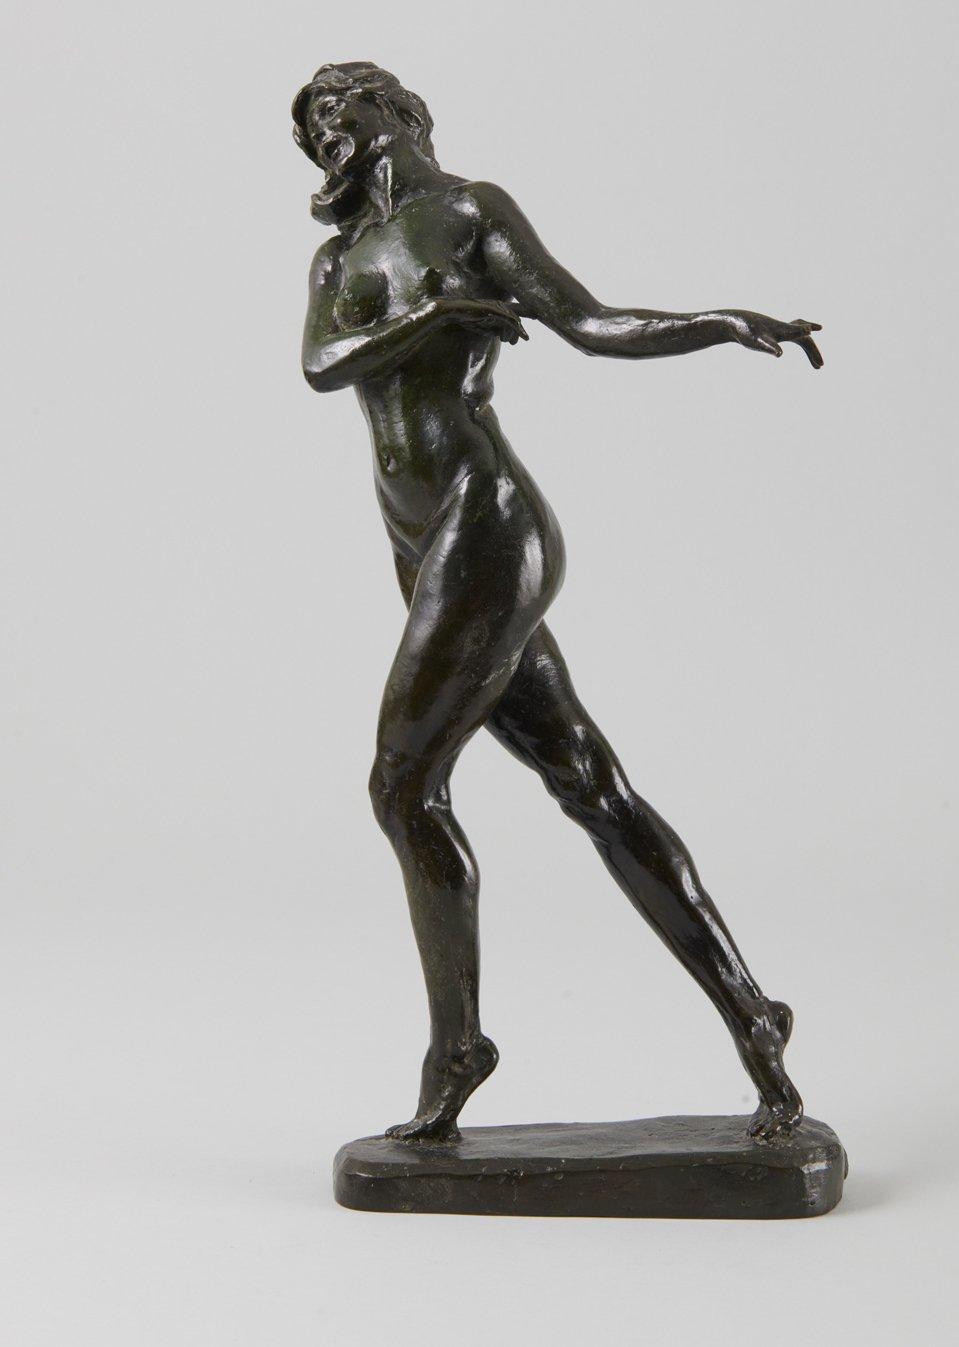 Max Kalish Figurative Sculpture – Aktspaziergang, Bronzeskulptur des frühen 20. Jahrhunderts, Künstler der Cleveland School